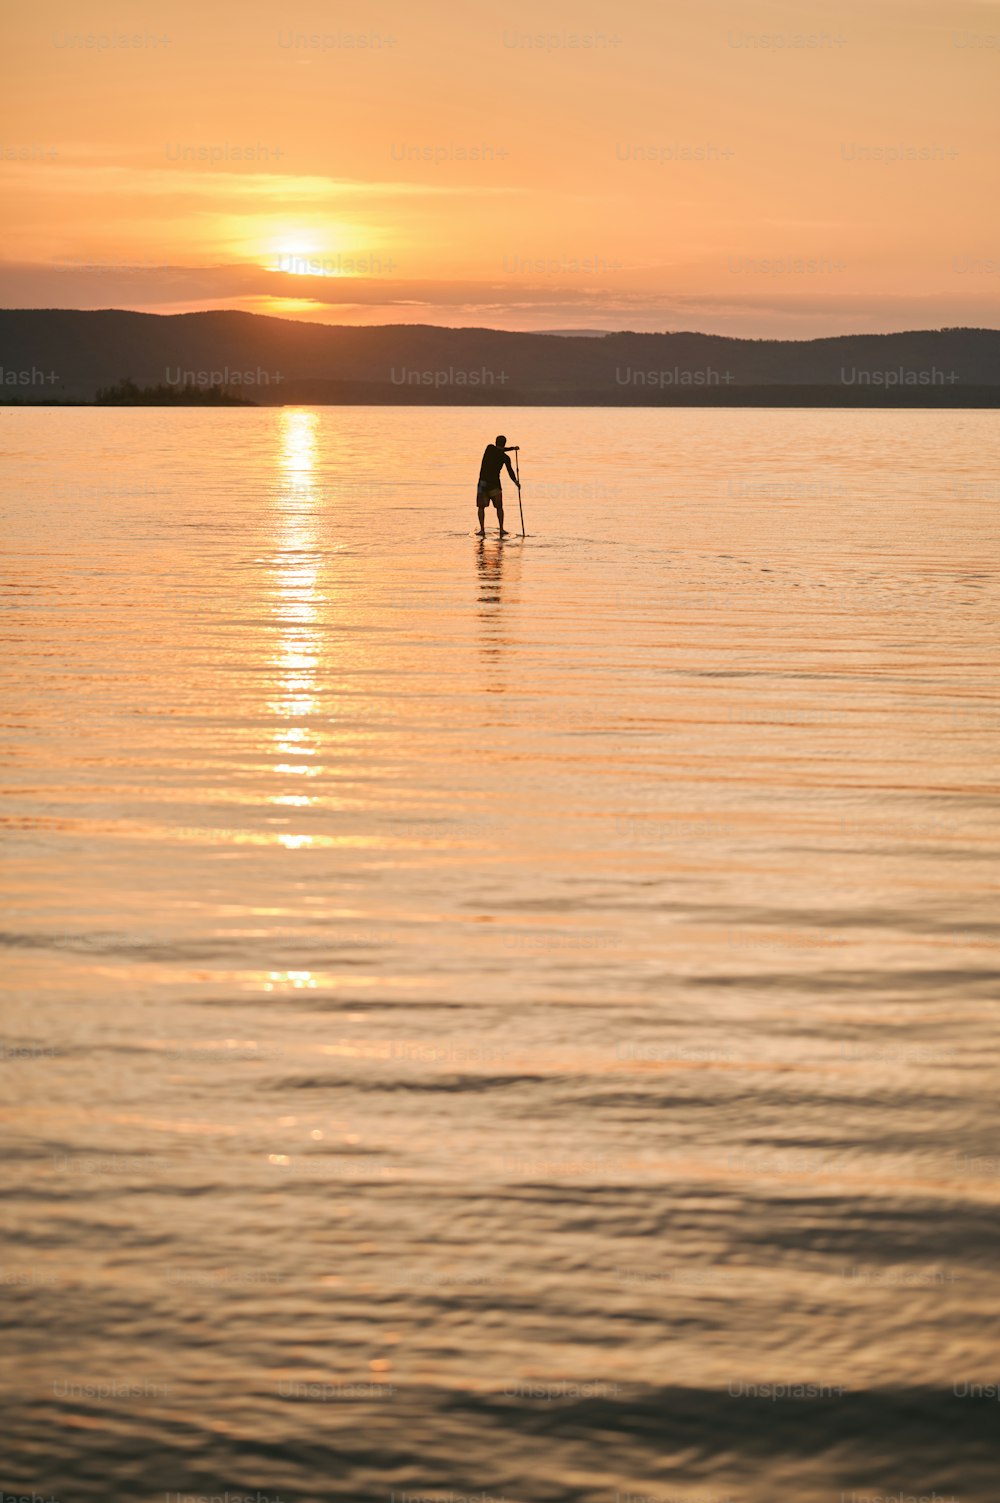 Figure d’un homme debout sur une planche de sup surf, pagayant sur une eau calme au coucher du soleil